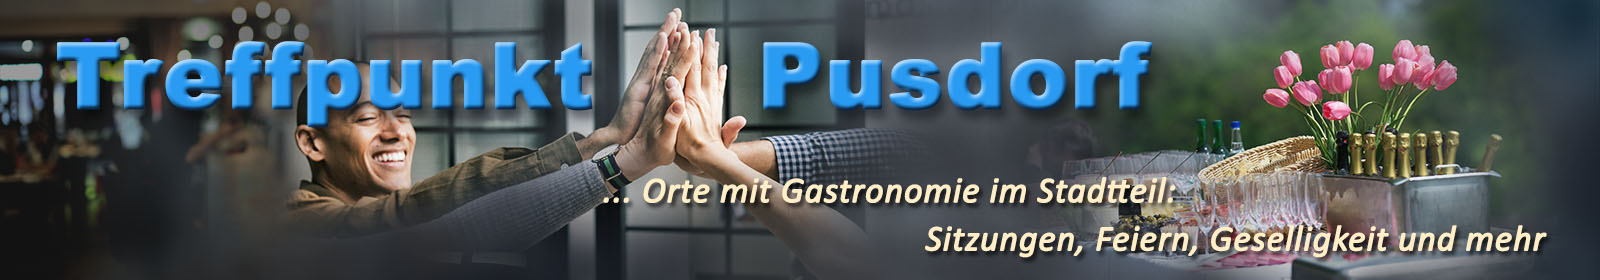 pusdorf.info – Kulturhaus Pusdorf